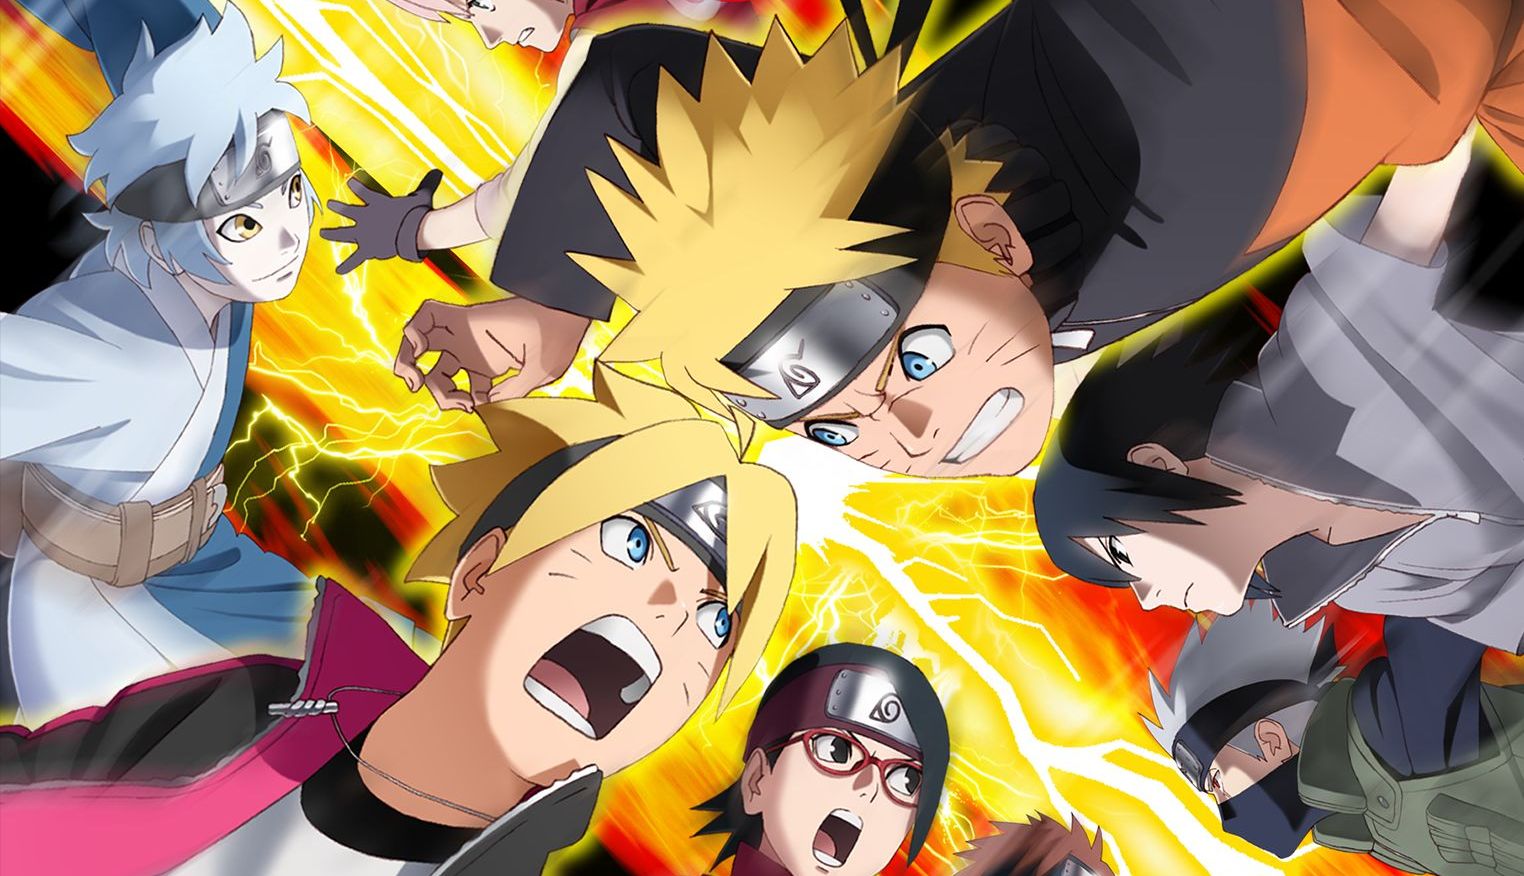 Disponible hasta el 31 de enero de 2019 una demo gratuita de Naruto to Boruto: Shinobi Striker